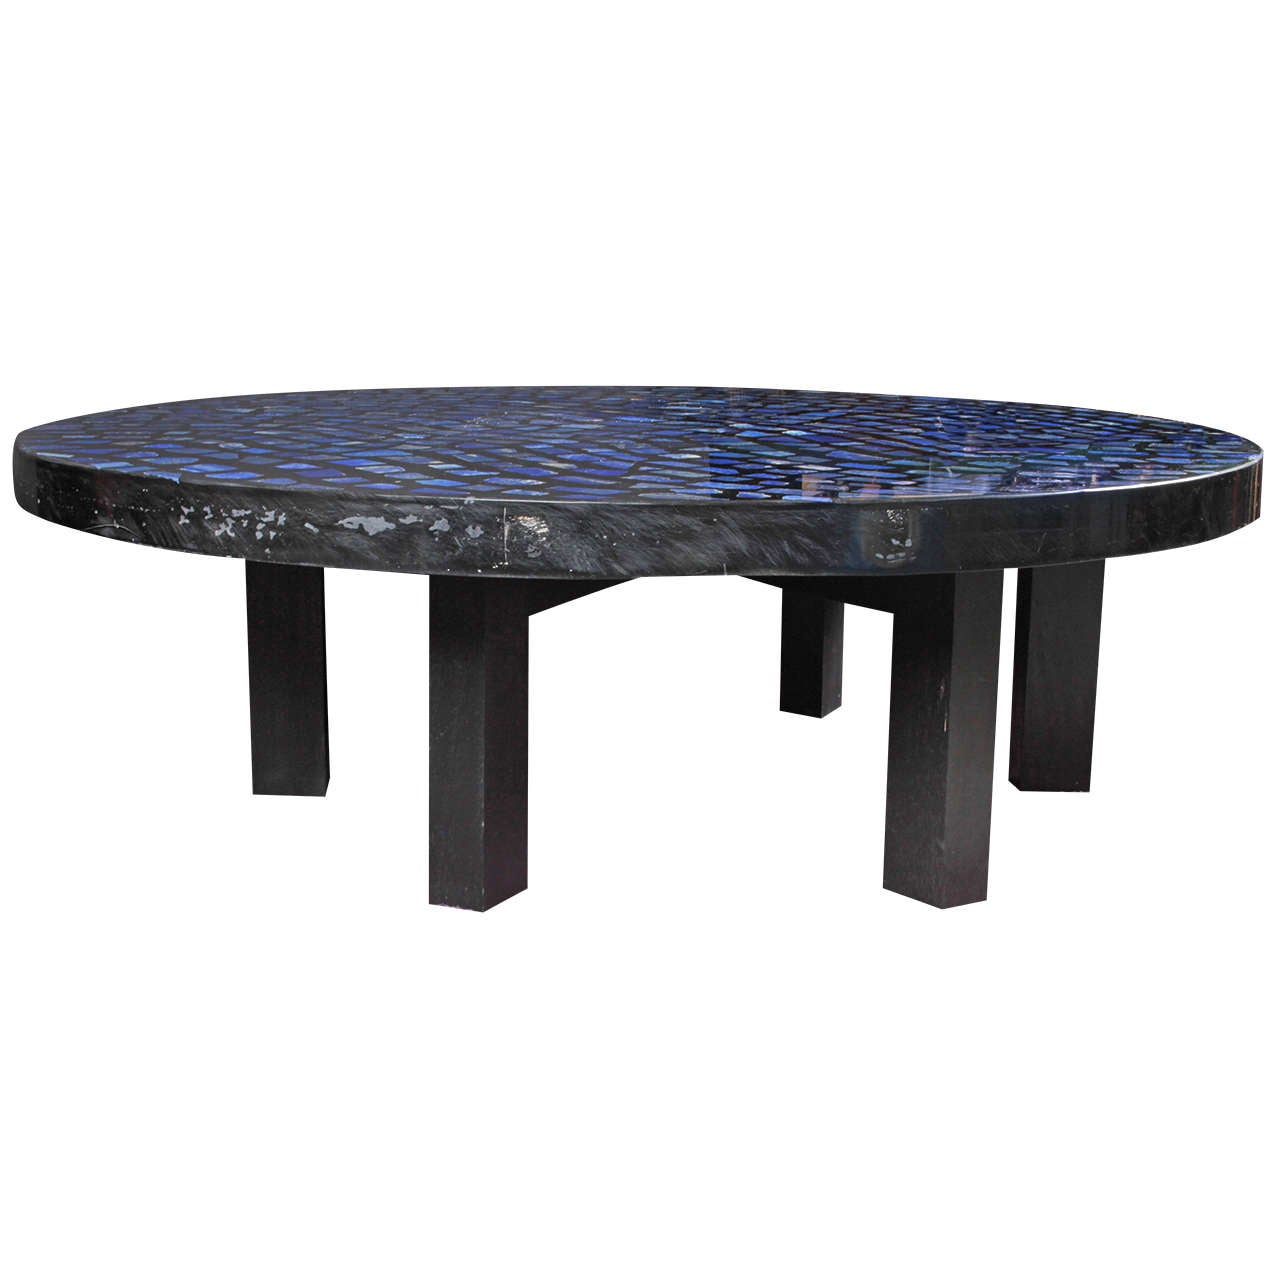 Sehr beeindruckender runder Couchtisch aus Lapislazuli und Harz von E. Allemeersch.
Der Tisch zeichnet sich durch seine Blautöne aus, die mit dem Licht variieren und tanzen.
Der Artikel ist von der Künstlerin signiert. 

Ausgezeichneter Zustand.